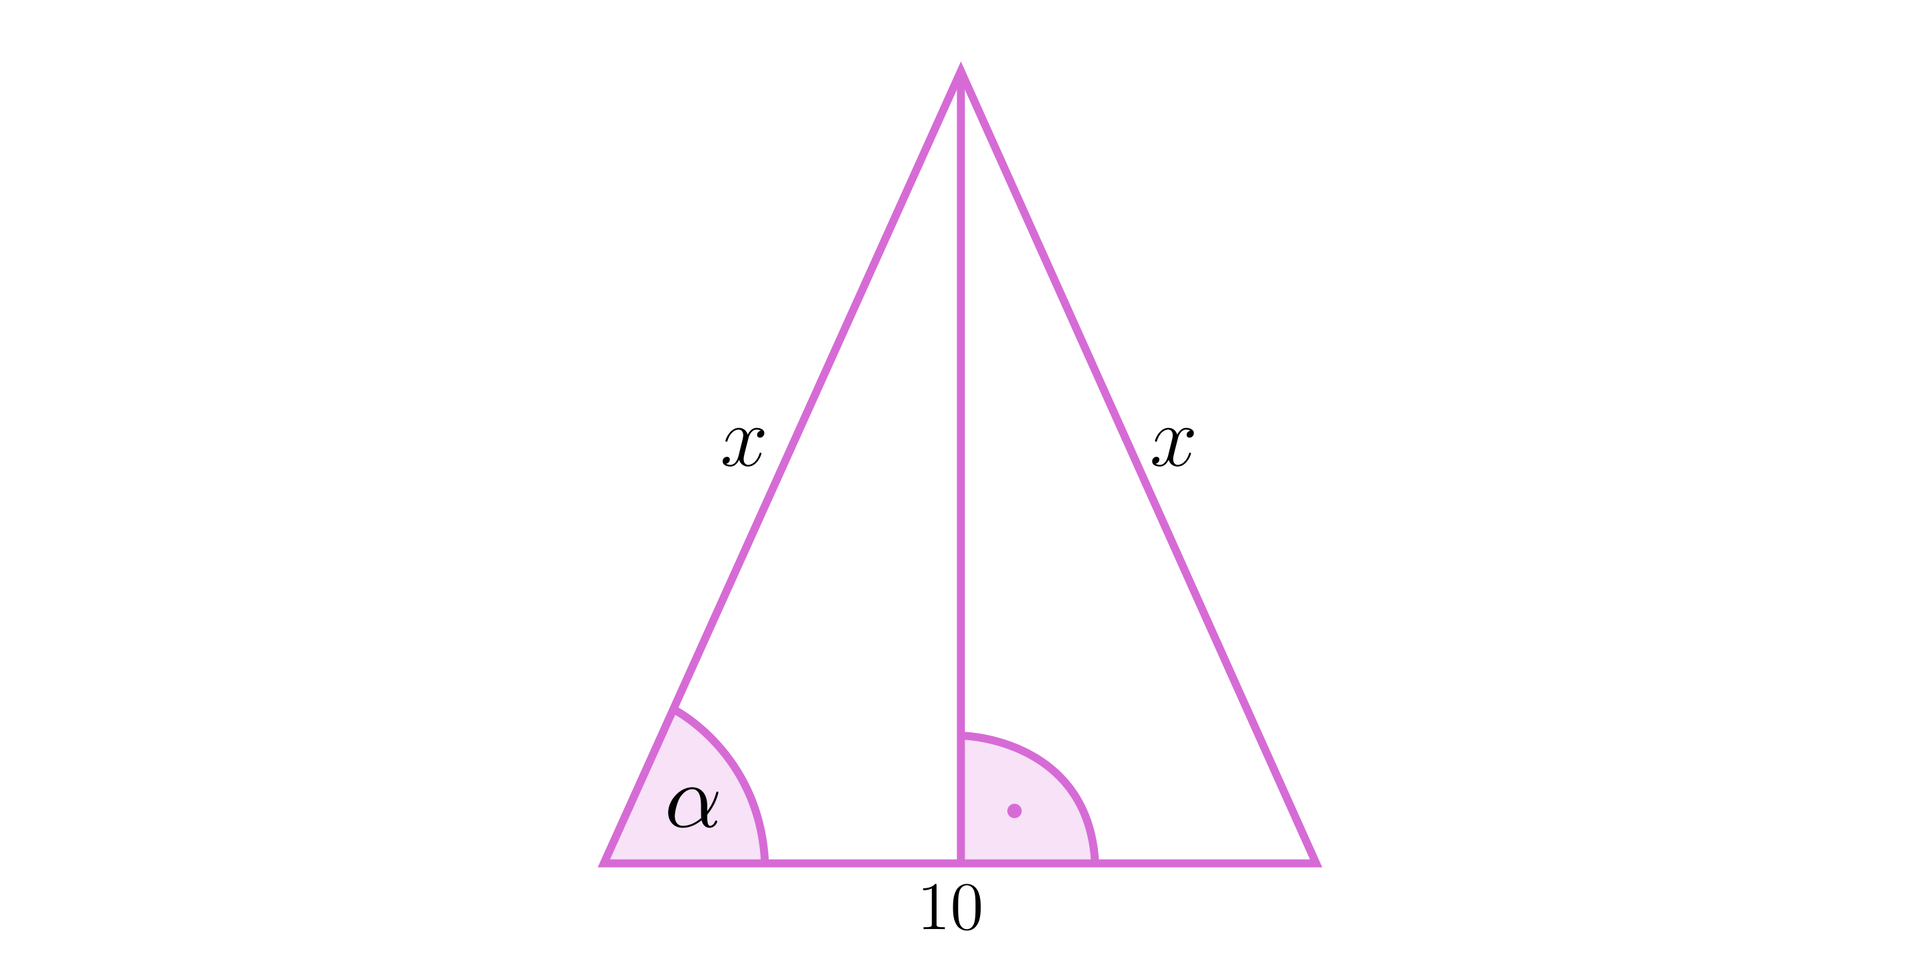 Ilustracja przedstawia trójkąt równoramienny. Oba ramiona trójkąta są podpisane literą x. Podstawa trójkąta ma długość 10. Kąt pomiędzy podstawą a ramieniem jest podpisany jako alfa. W trójkącie zaznaczona została jego wysokość, która jest pod kątem prostym do podstawy.